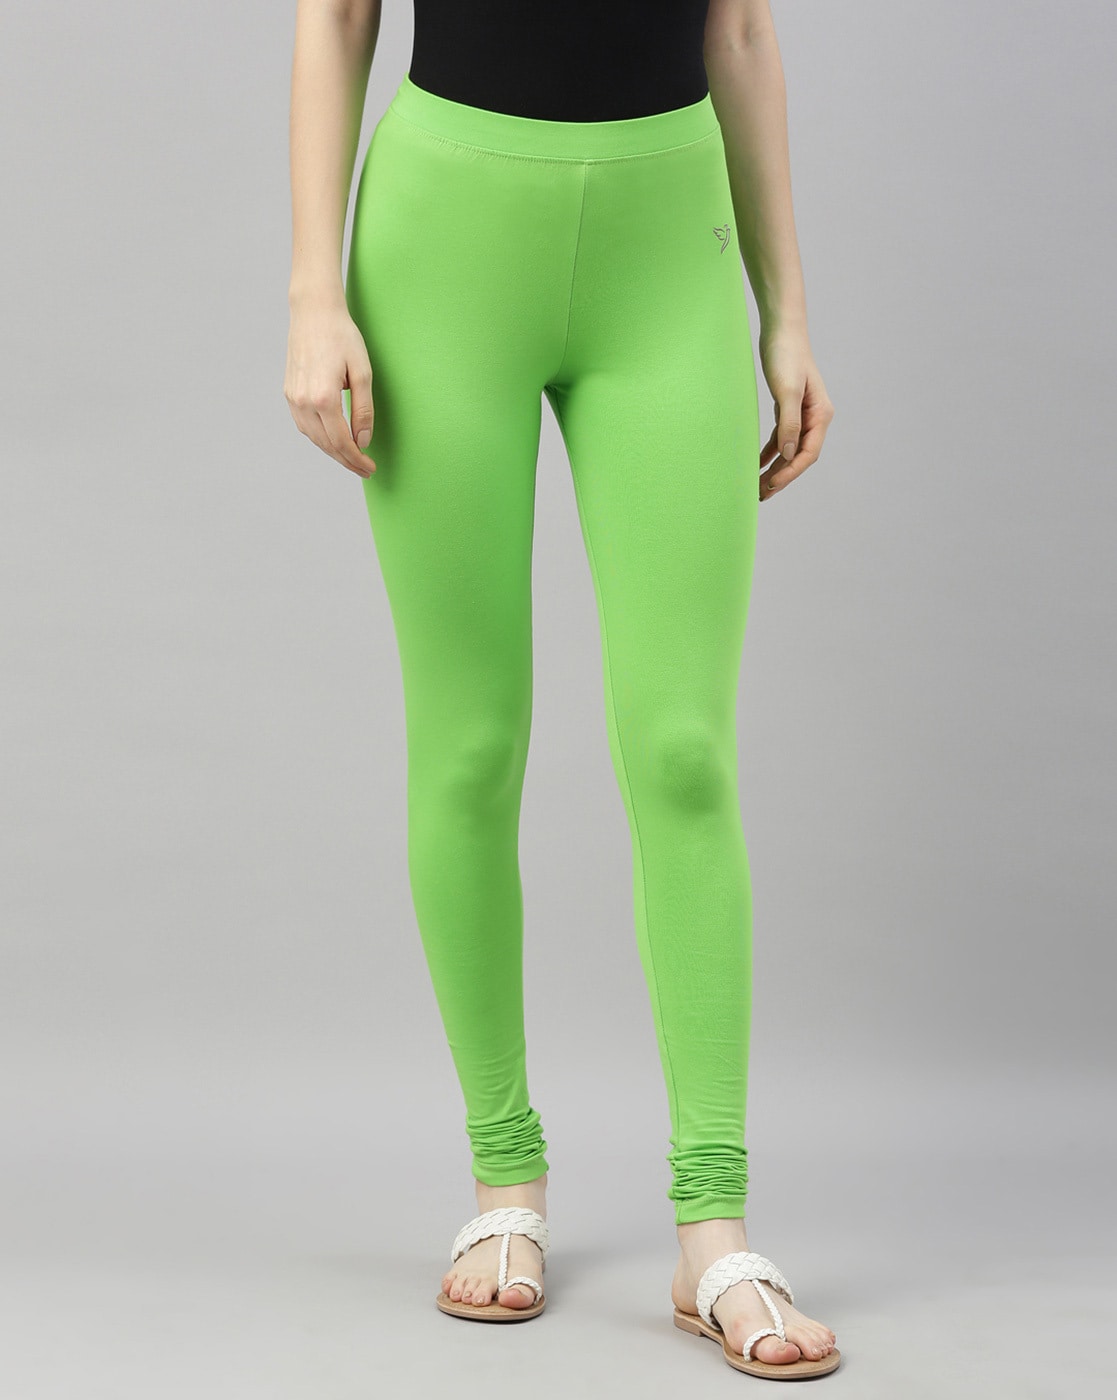 Green GIRLS & TEENS Girls' Short Length Premium Leggings 2793010